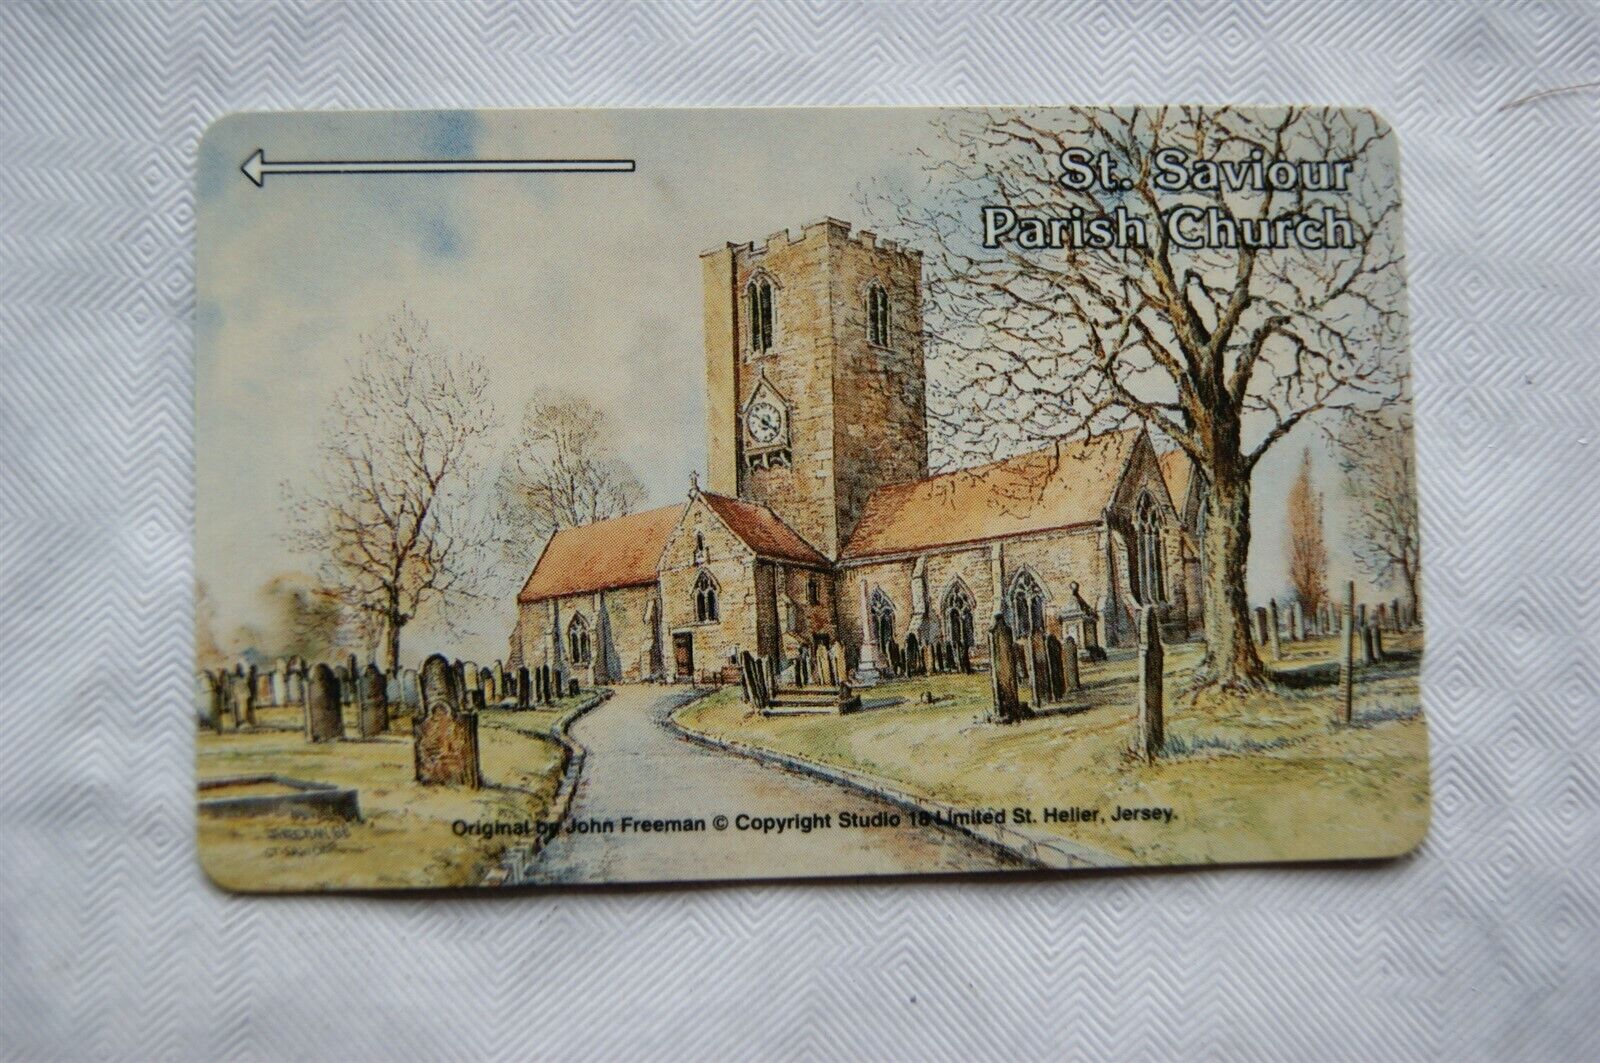 Jersey Phone Card - St Saviour Parish Church